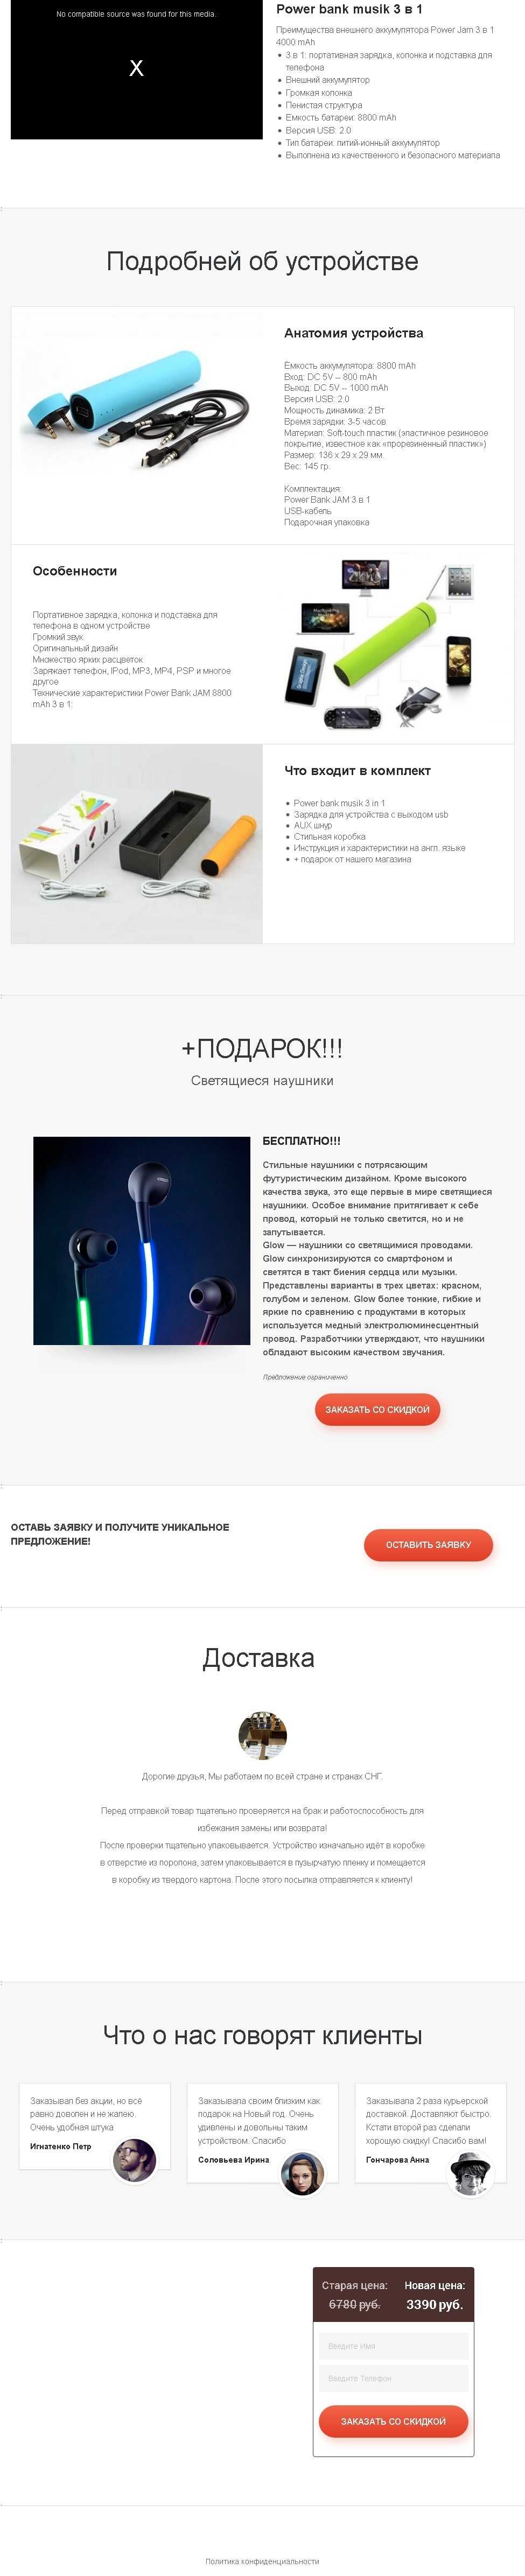 PowerBank Musik 3 в 1 и светящиеся наушники